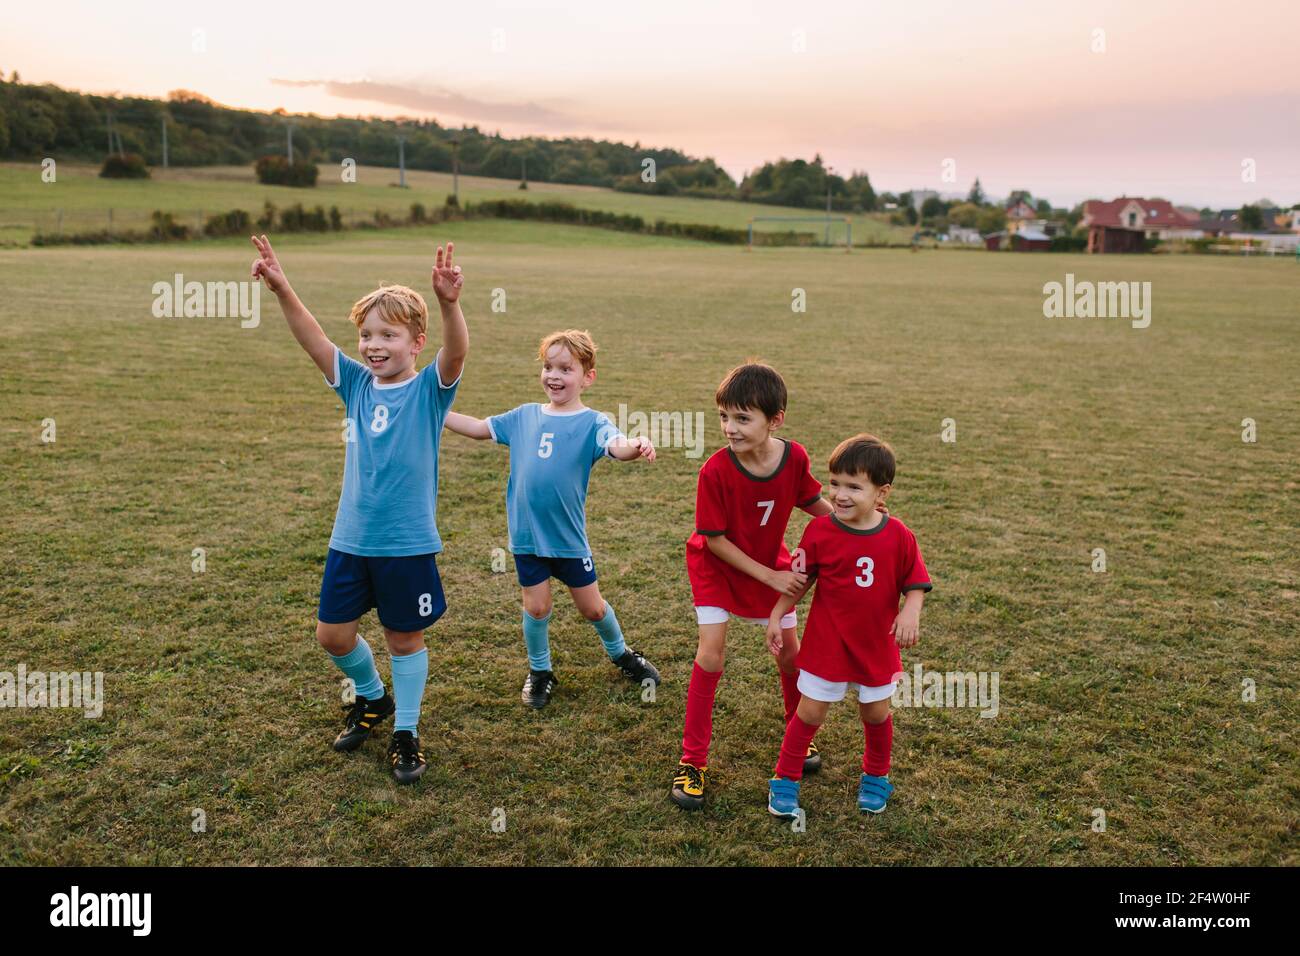 Enfants jouant au football amateur. Des garçons gais dans des robes de football ayant du plaisir à l'entraînement sur le terrain. Banque D'Images